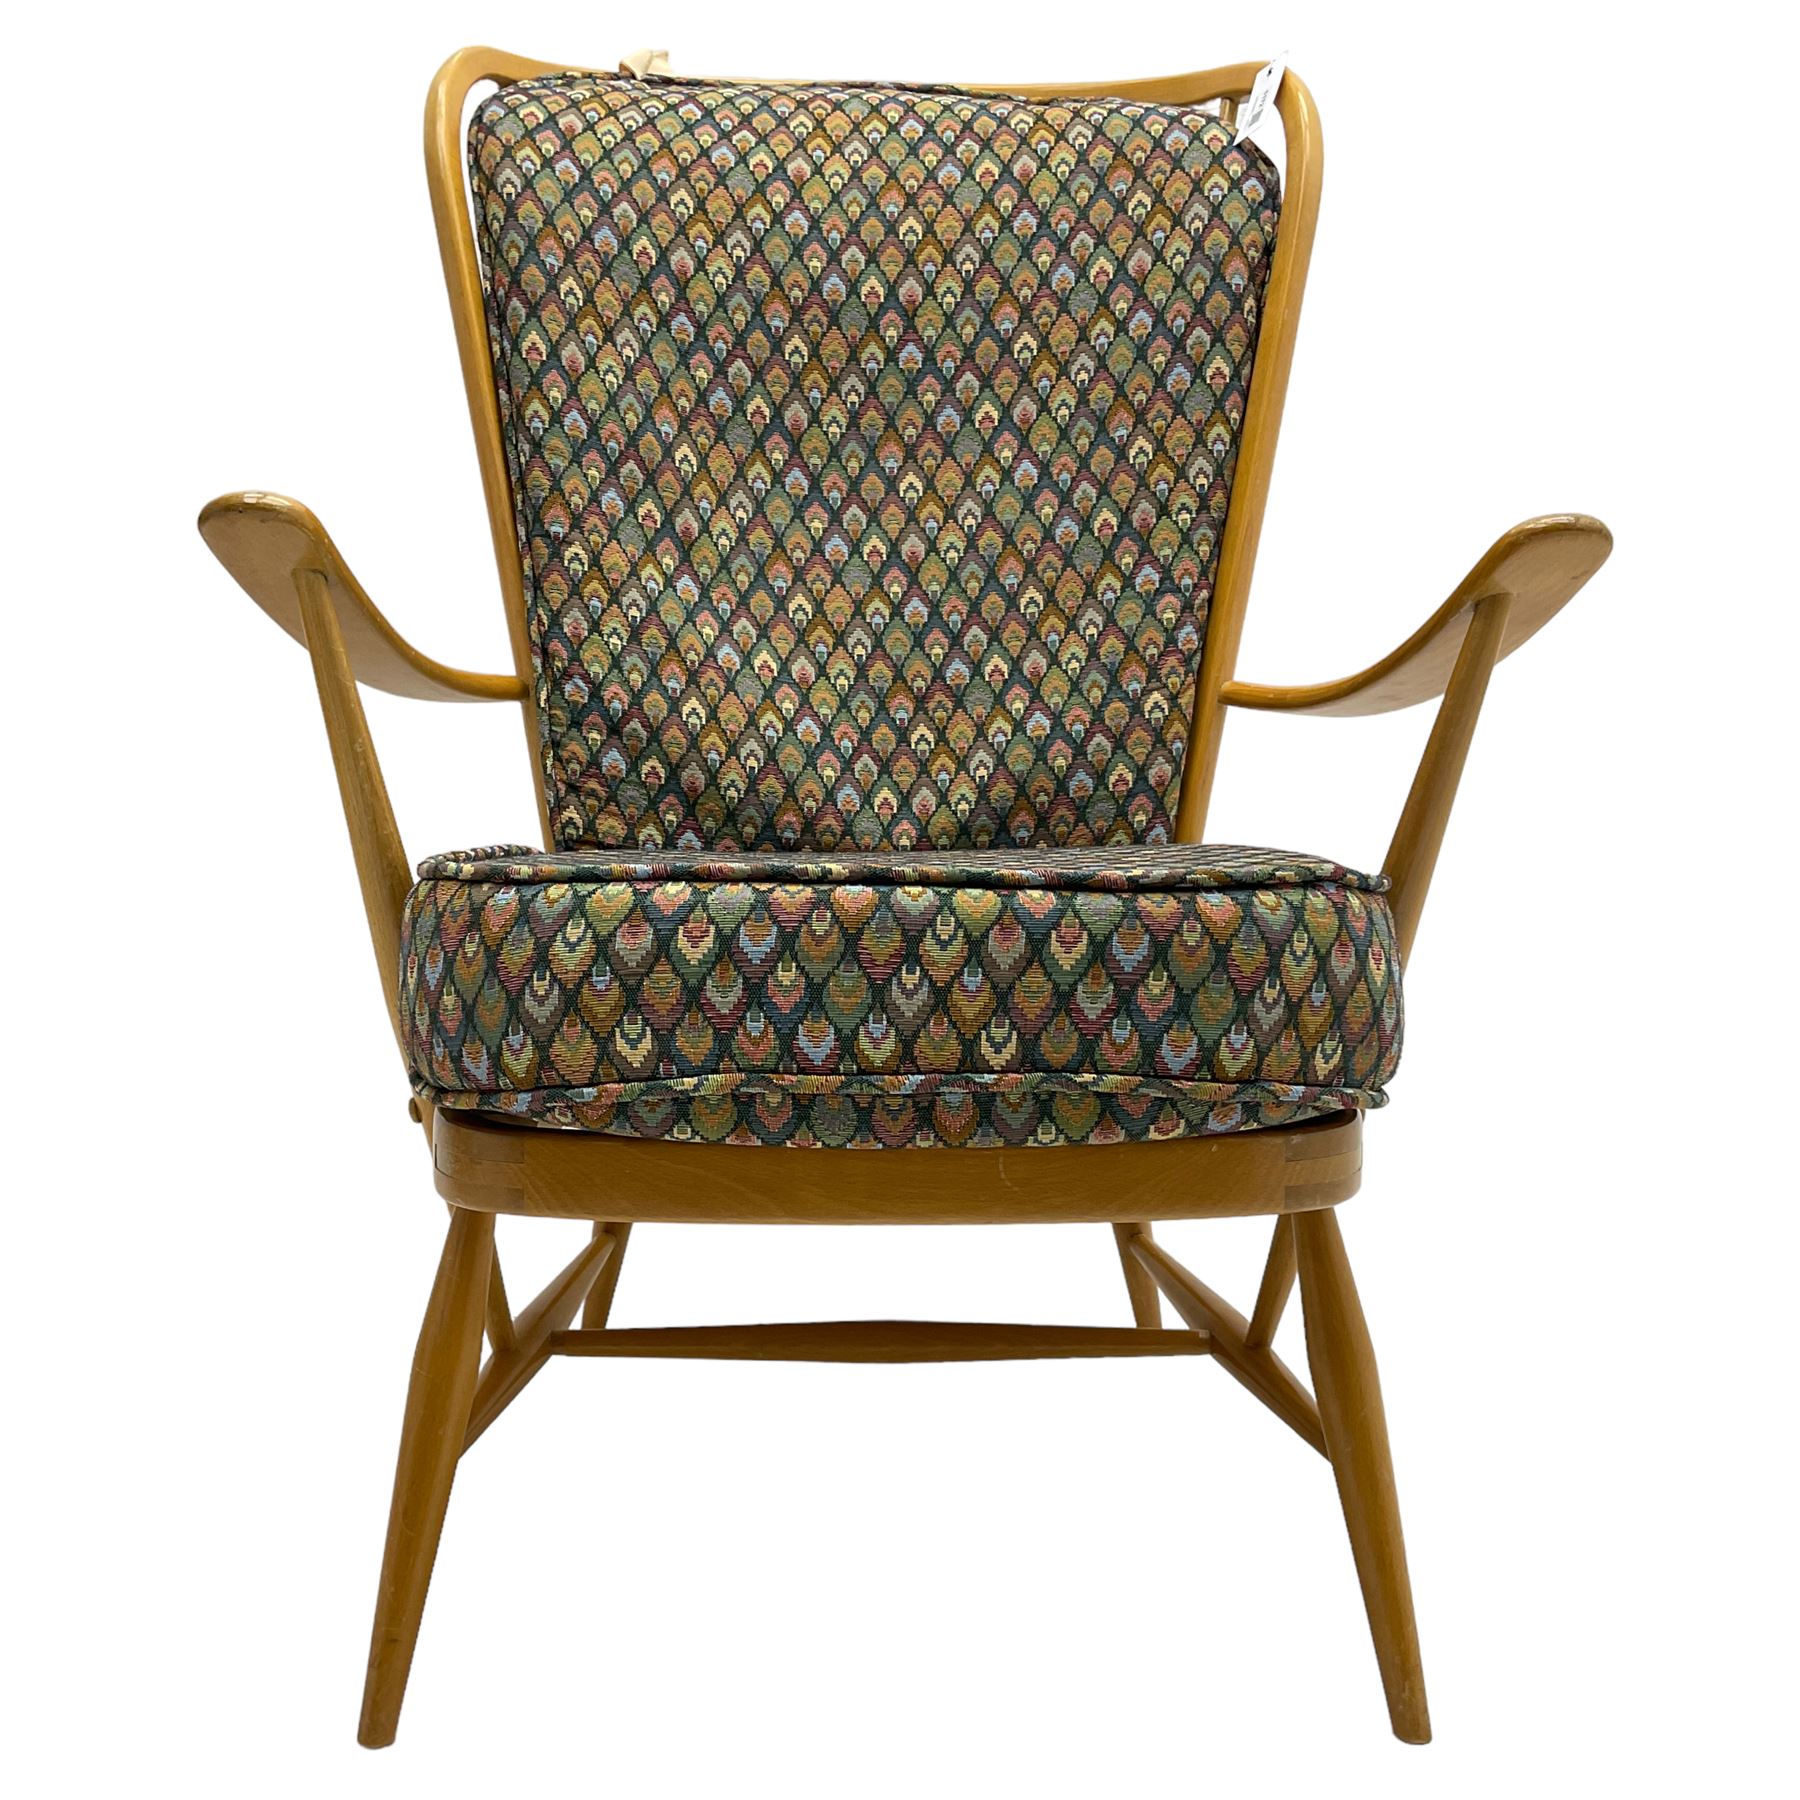 Ercol - light beech framed high-back 'Windsor' easy chair - Image 7 of 7